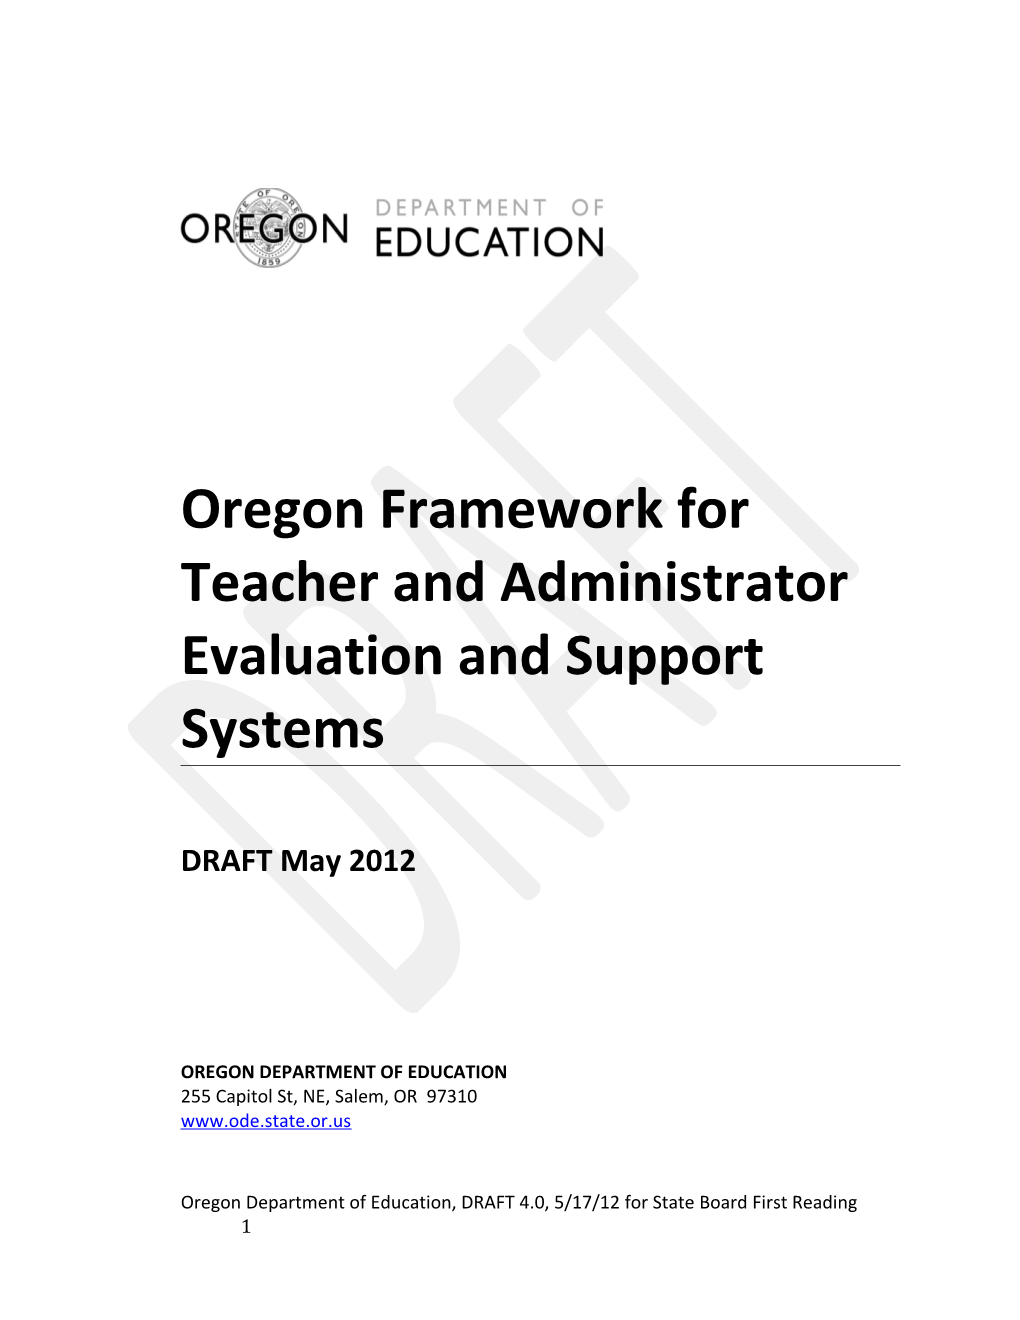 Oregon Framework For